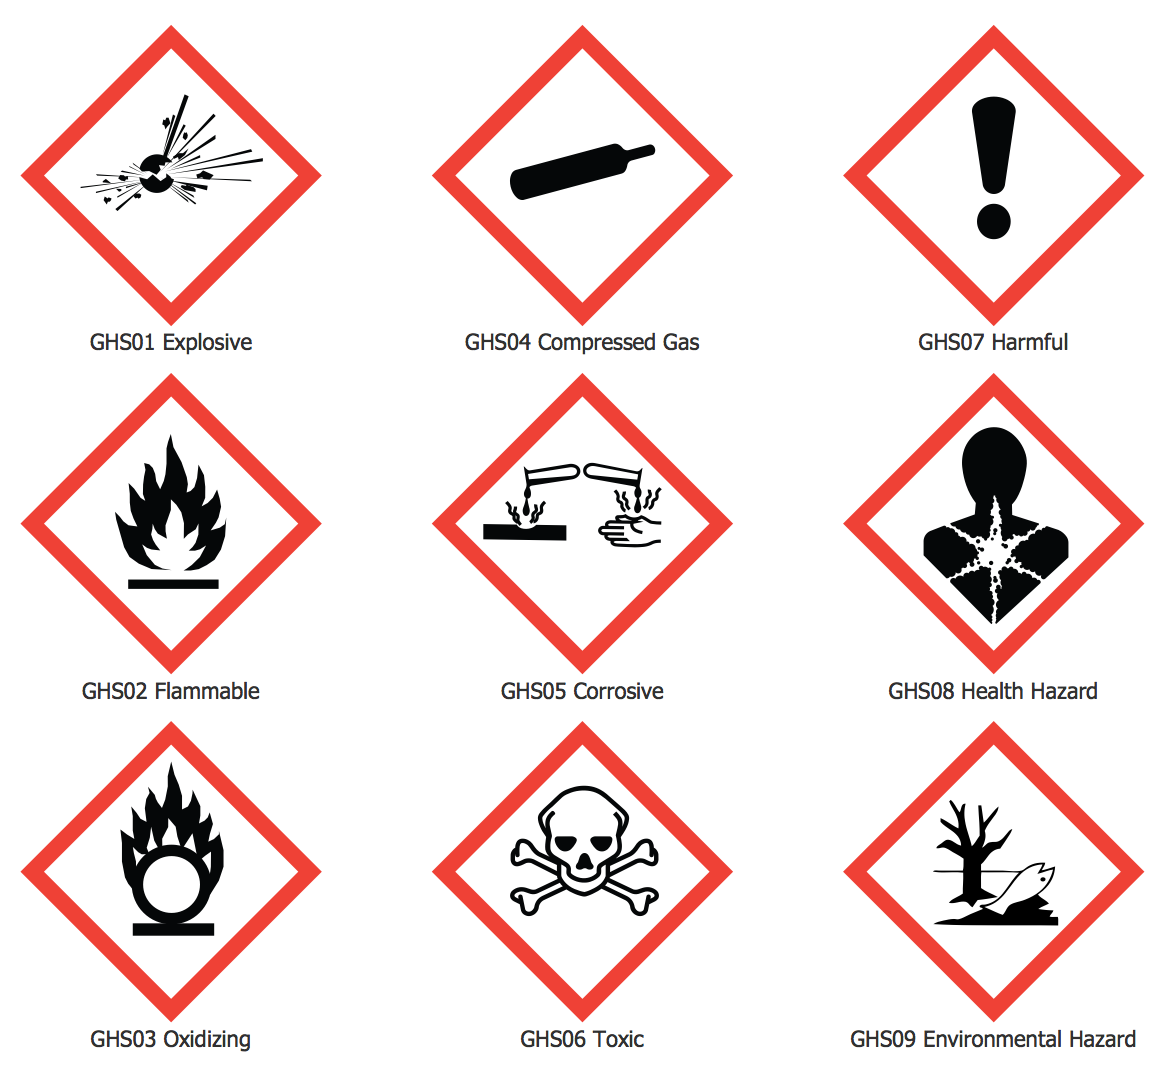 Знаки предупреждающие об опасности